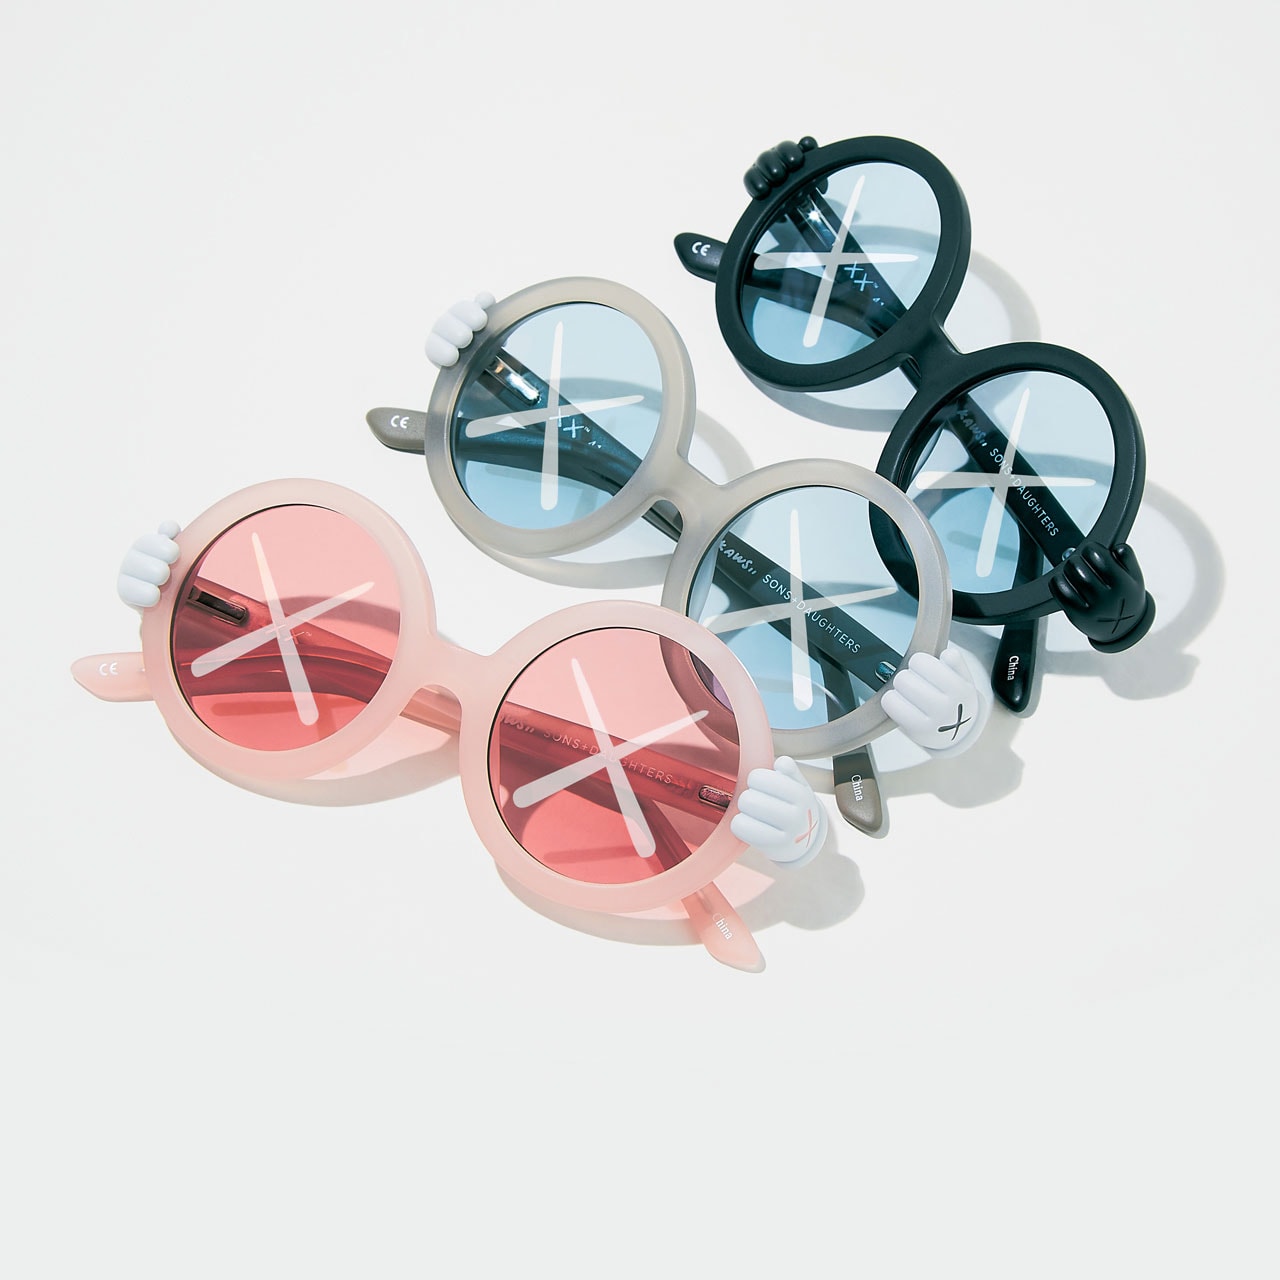 カウズxサン+ドーターのキッズ用サングラスのオフィシャルイメージが到着 KAWS x Sons+Daughters Sunglasses Collaboration